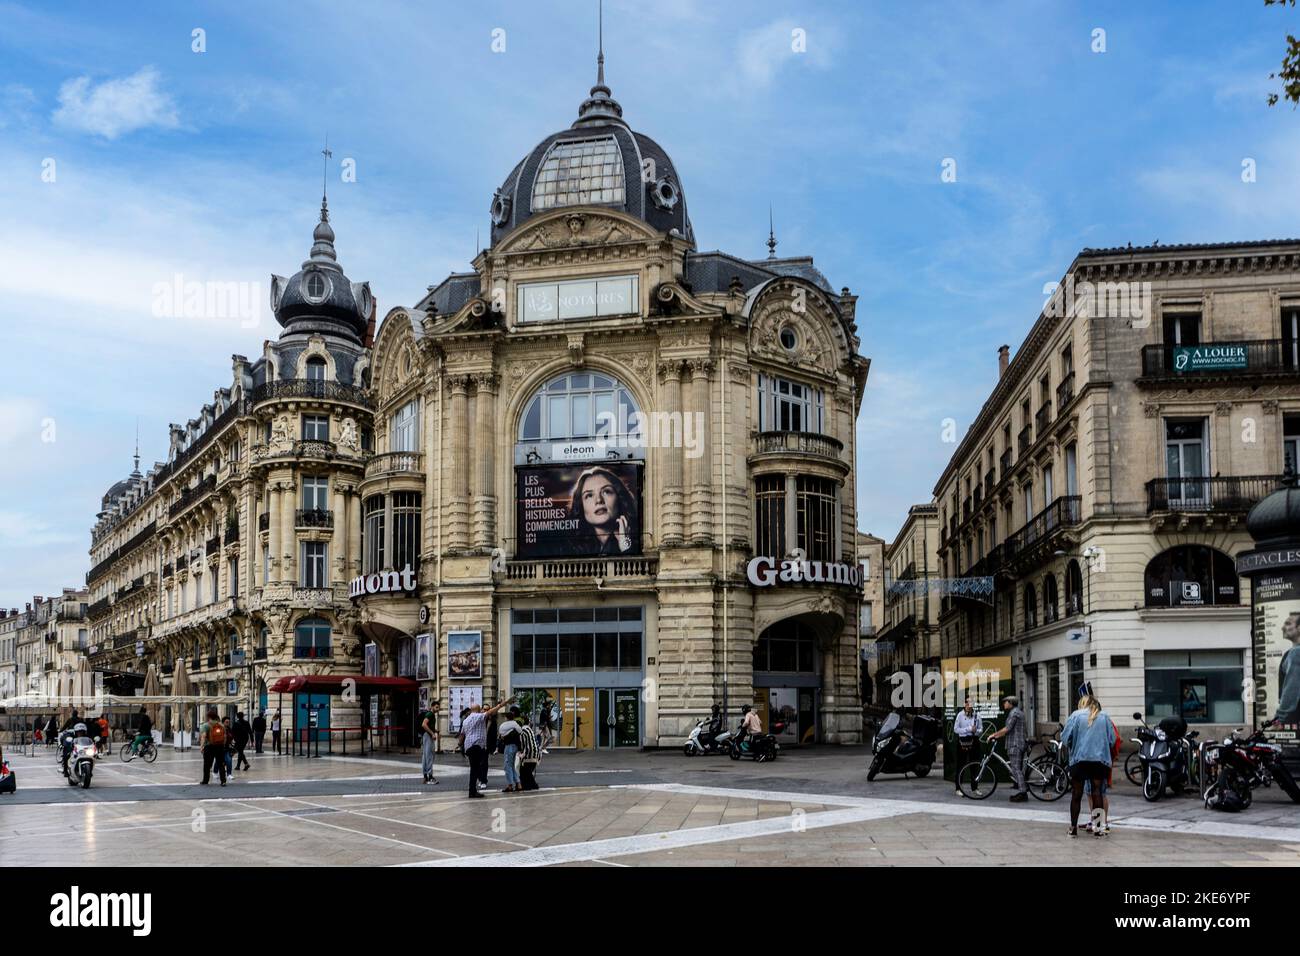 Le centre ville de Montpellier, France. Banque D'Images